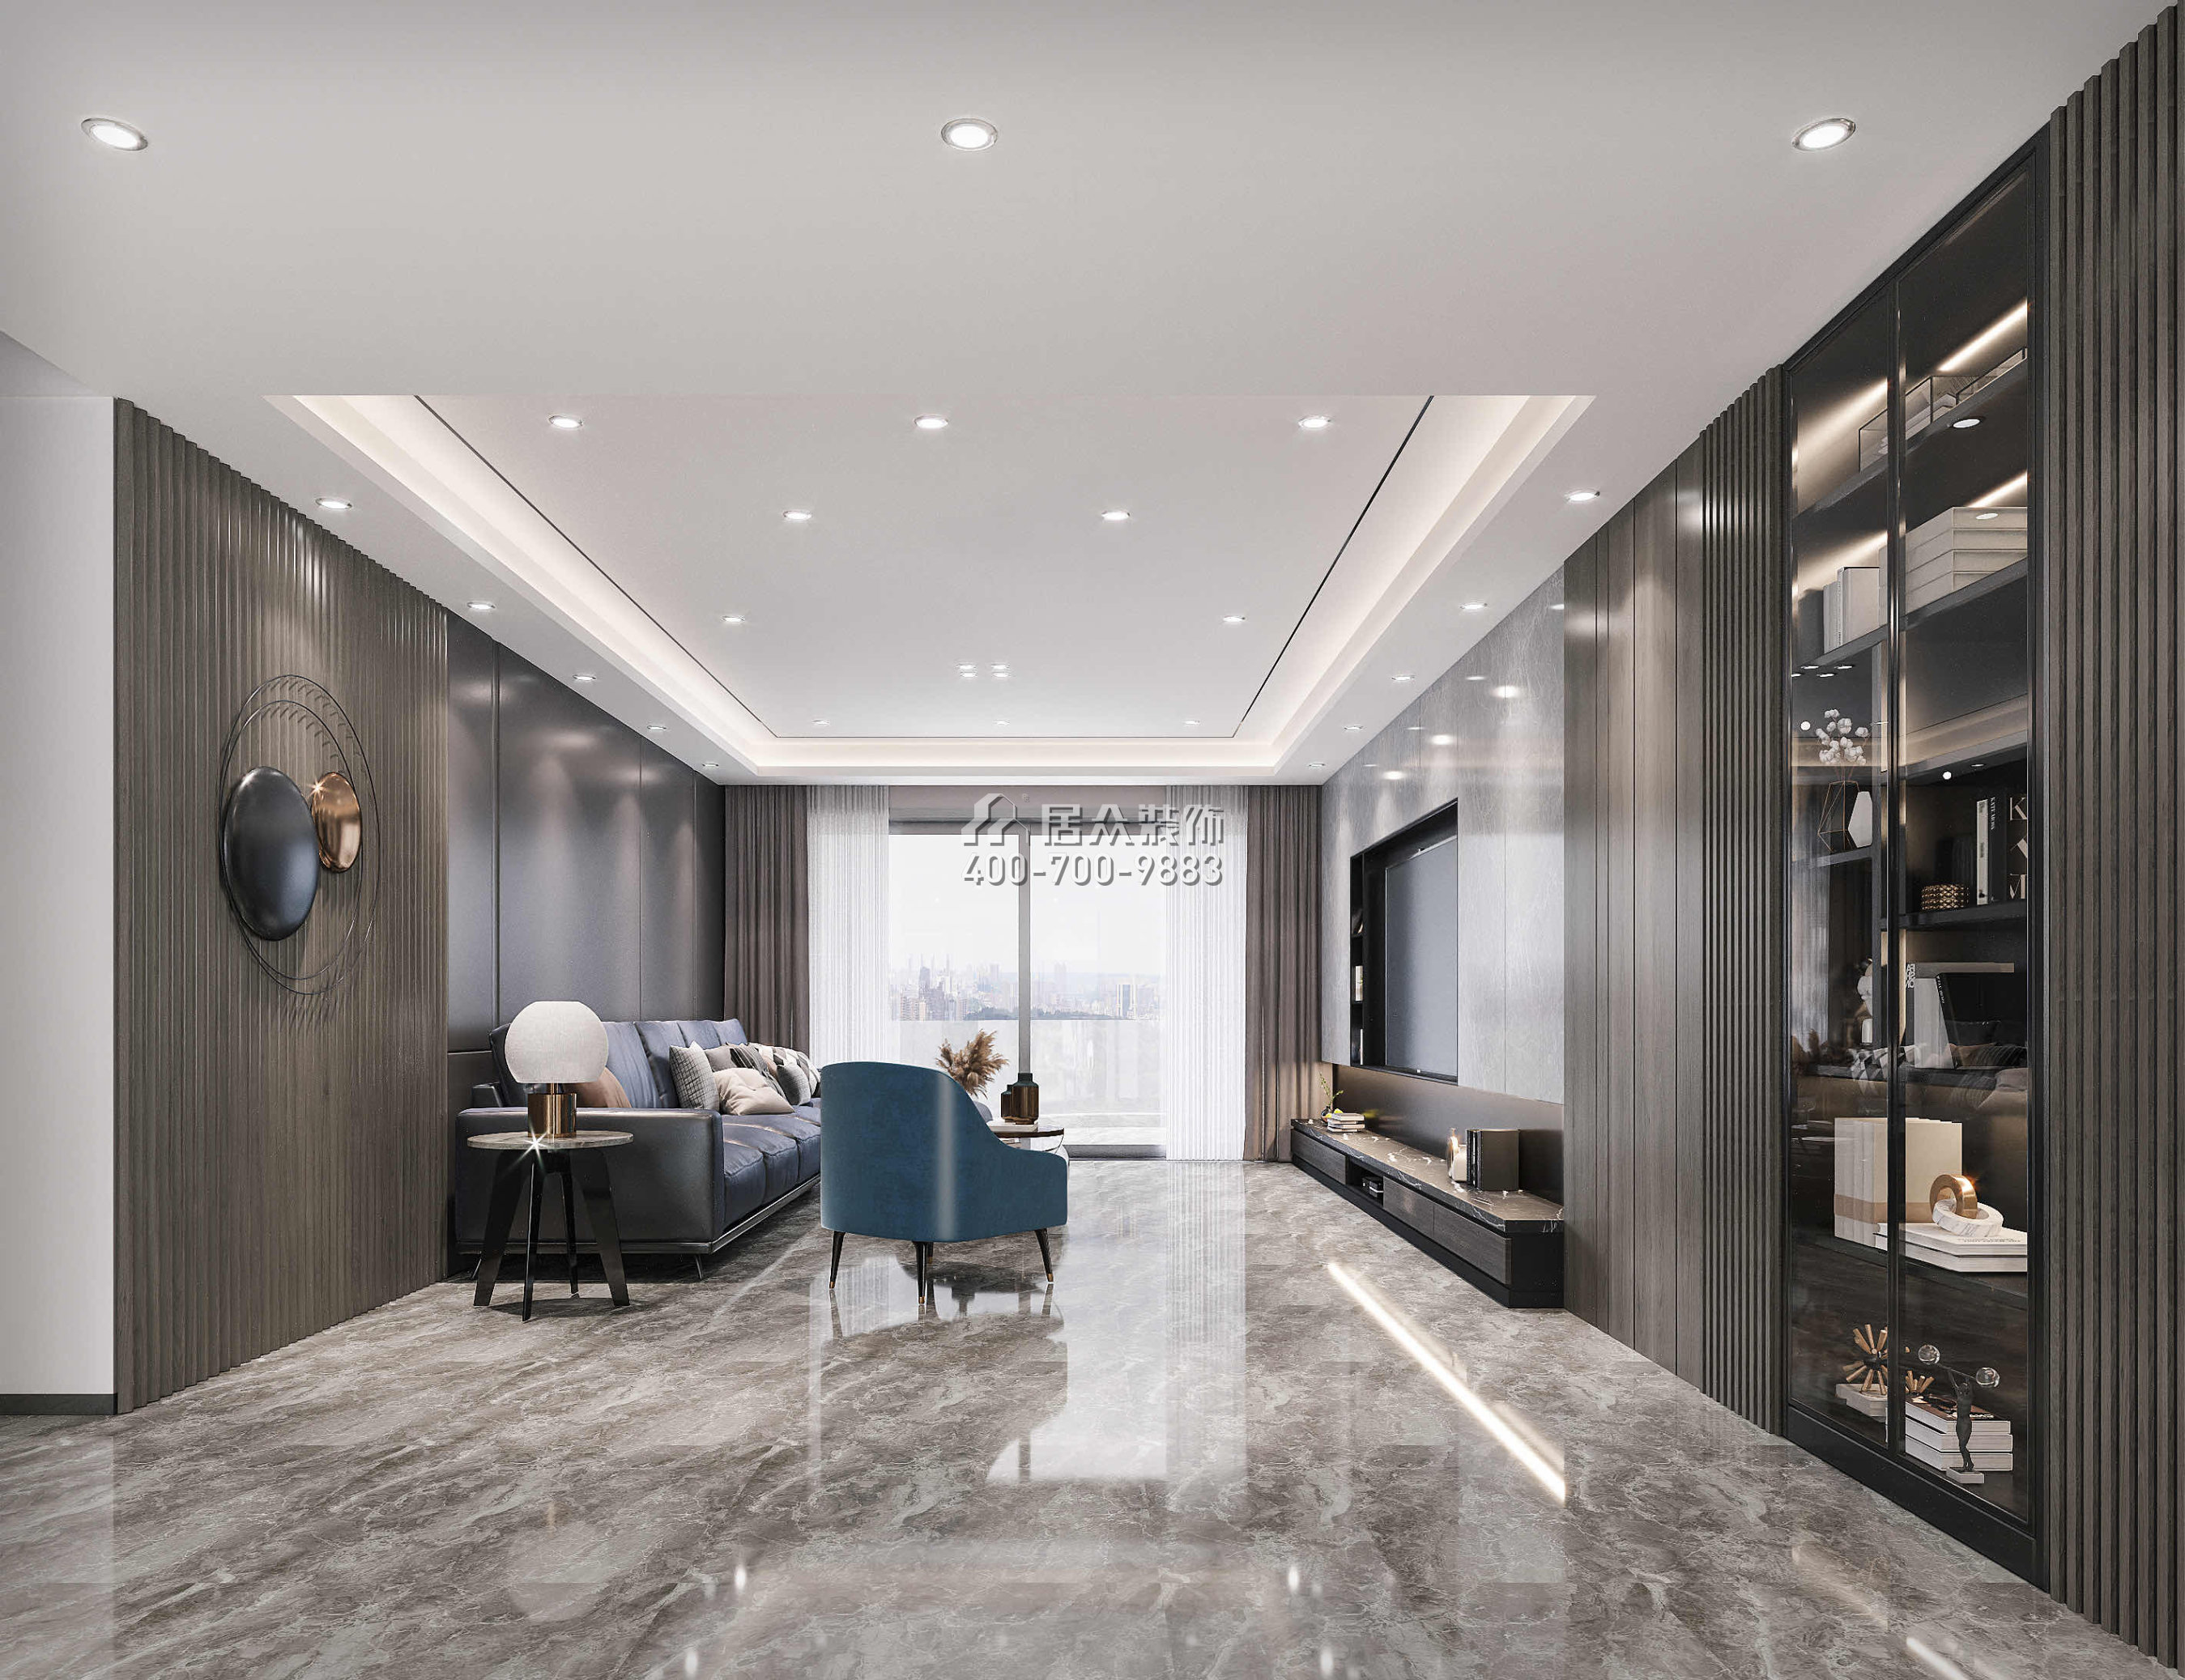 南海玫瑰園180平方米現代簡約風格平層戶型客廳裝修效果圖